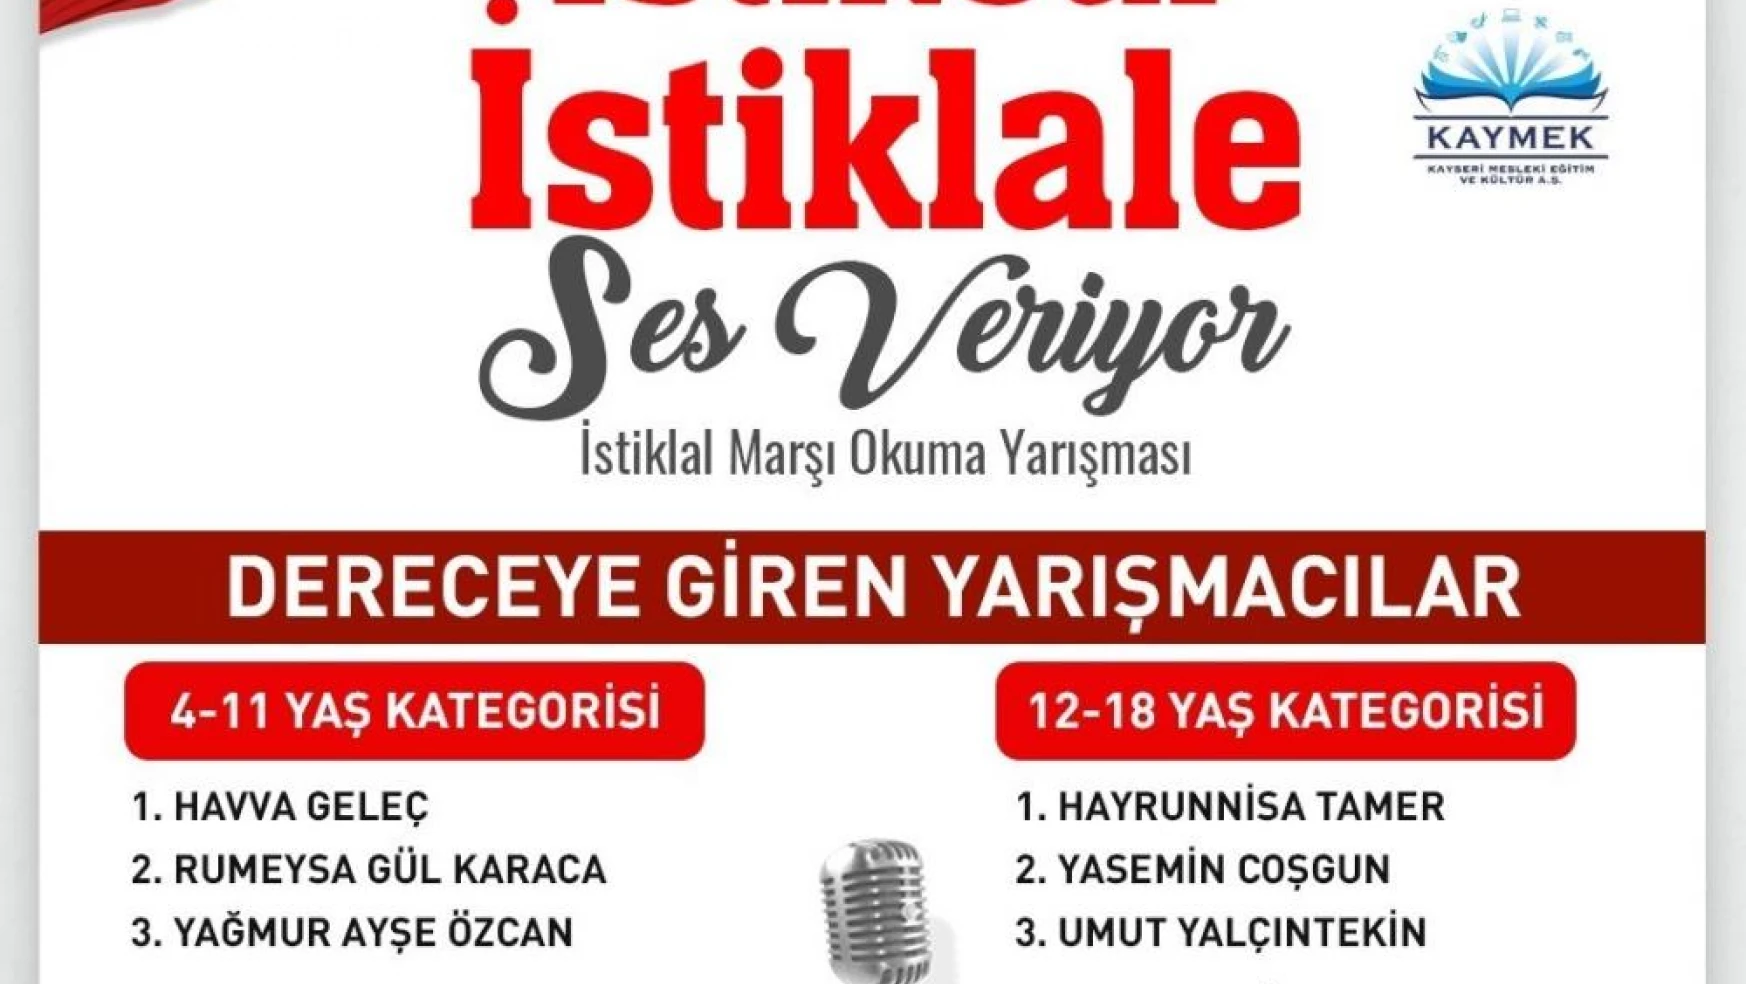 Büyükşehir'in 'İstikbal İstiklale Ses Veriyor' yarışmasının ödülleri sahiplerini buluyor